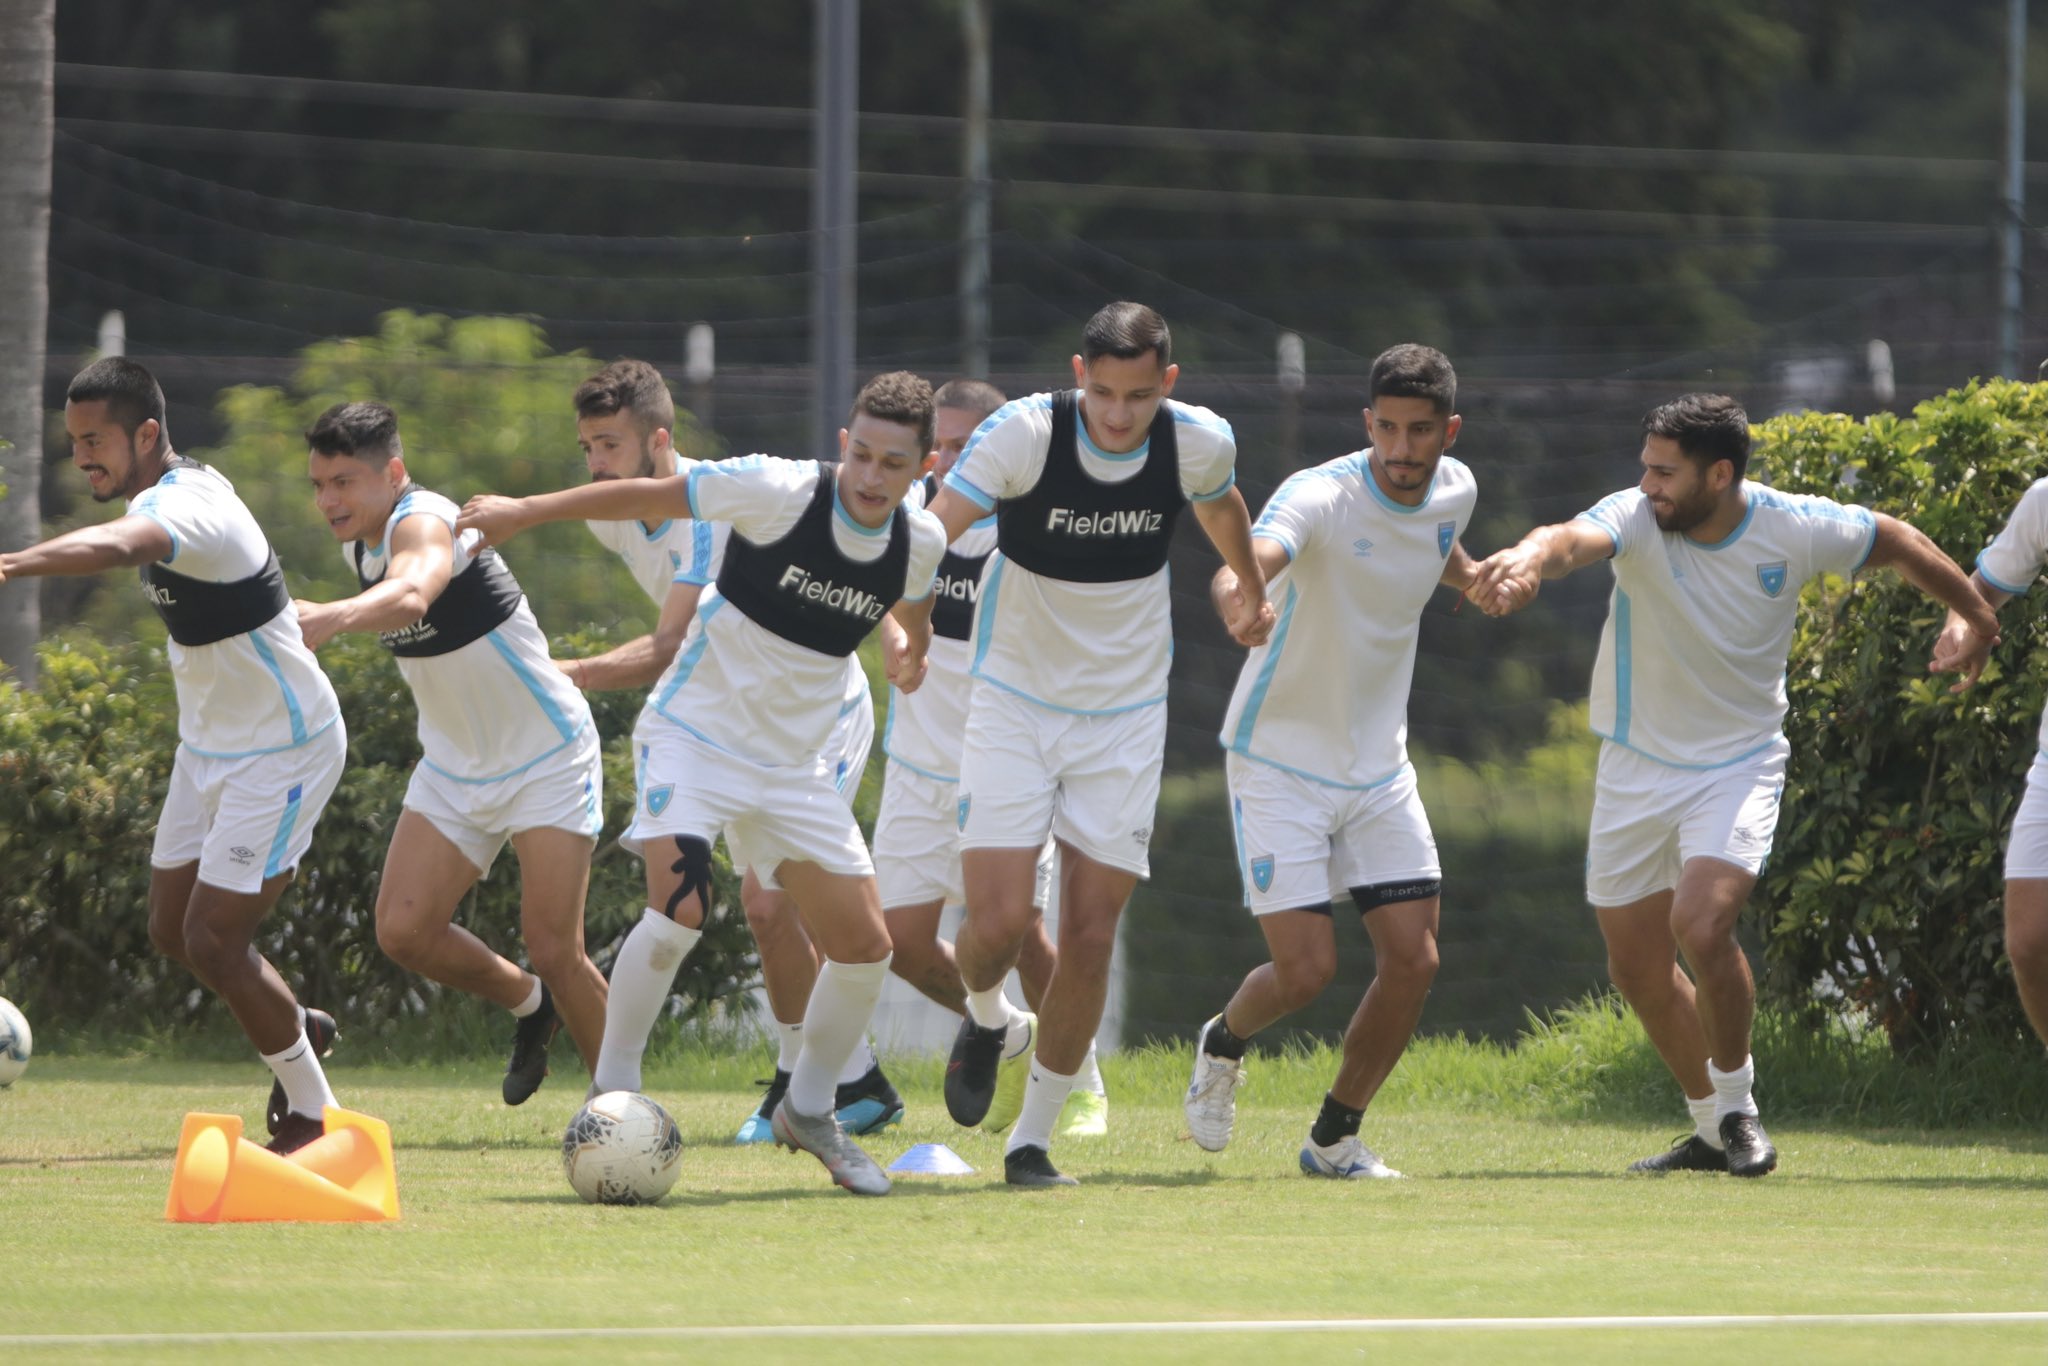 La Selección de Guatemala trabaja en el Centro de Alto Rendimiento, zona 15, con los ojos puesto en el partido contra San Vicente y las Granadinas. (Foto cortesía Fedefut).